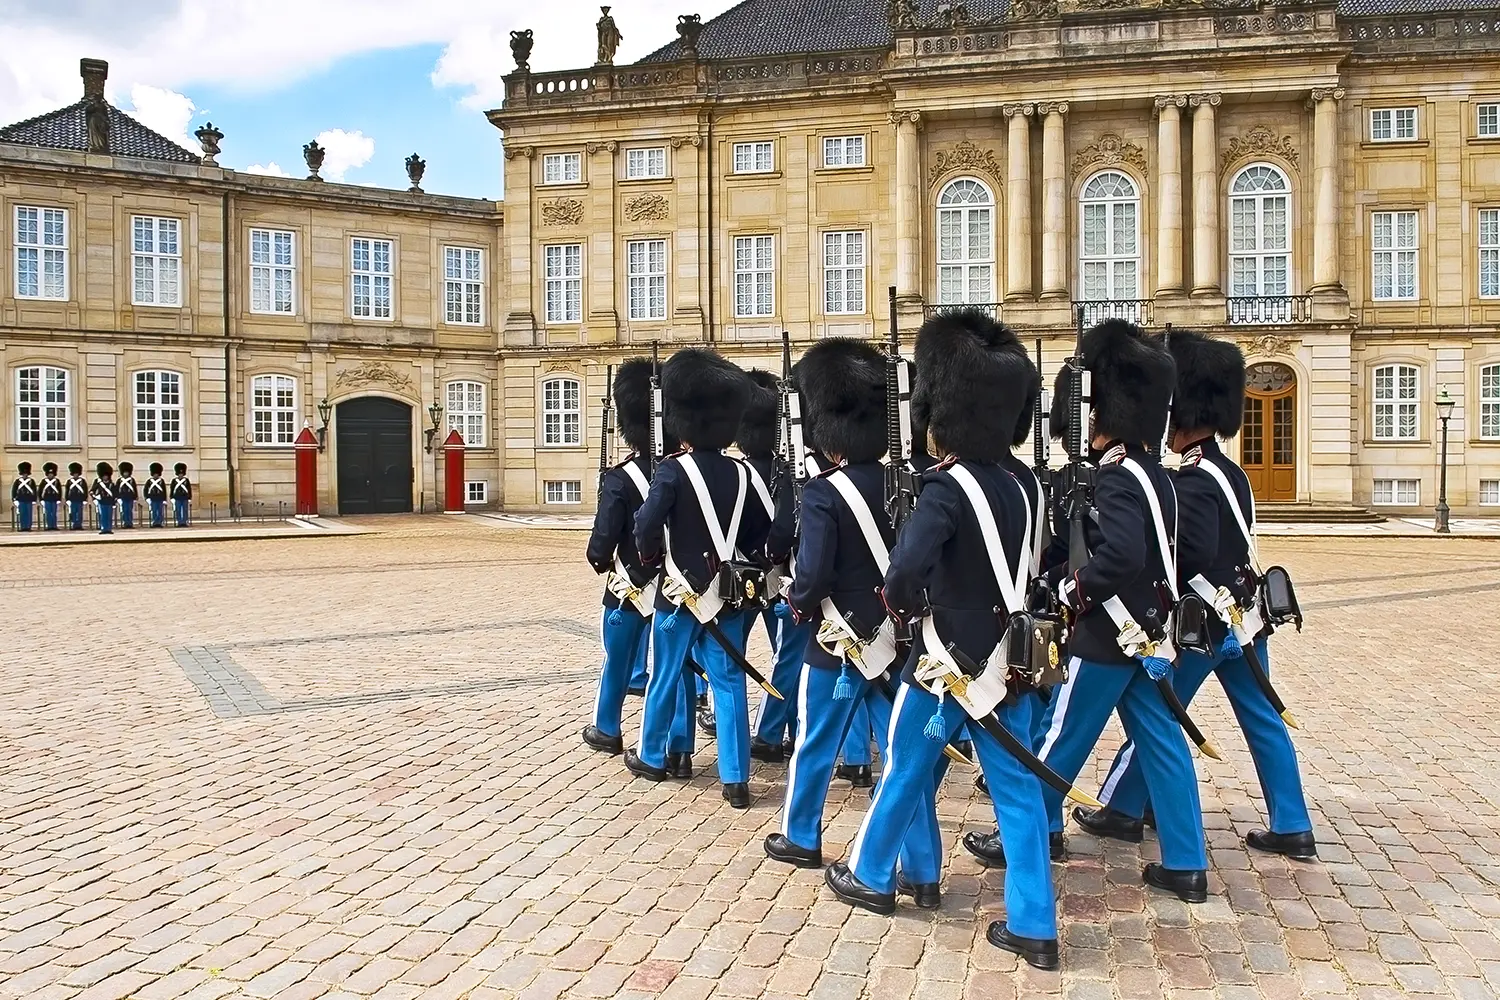 Royal Guard in Amalienborg Castle in Copenhagen, Denmark